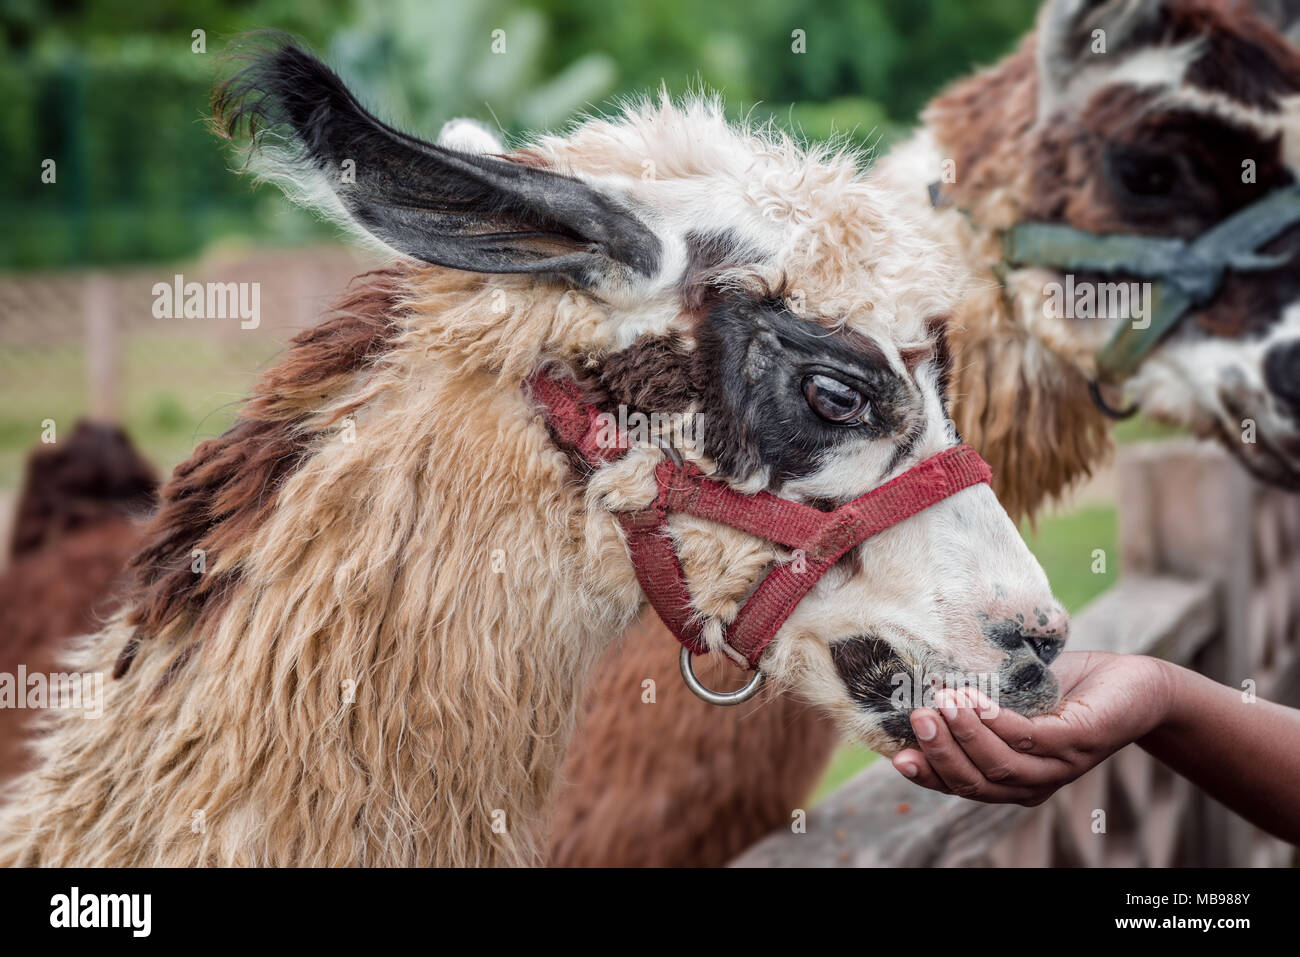 Lama alimentation animal au zoo safari animal apprivoisé mangeant de la main du visiteur fourrure douce floue Banque D'Images